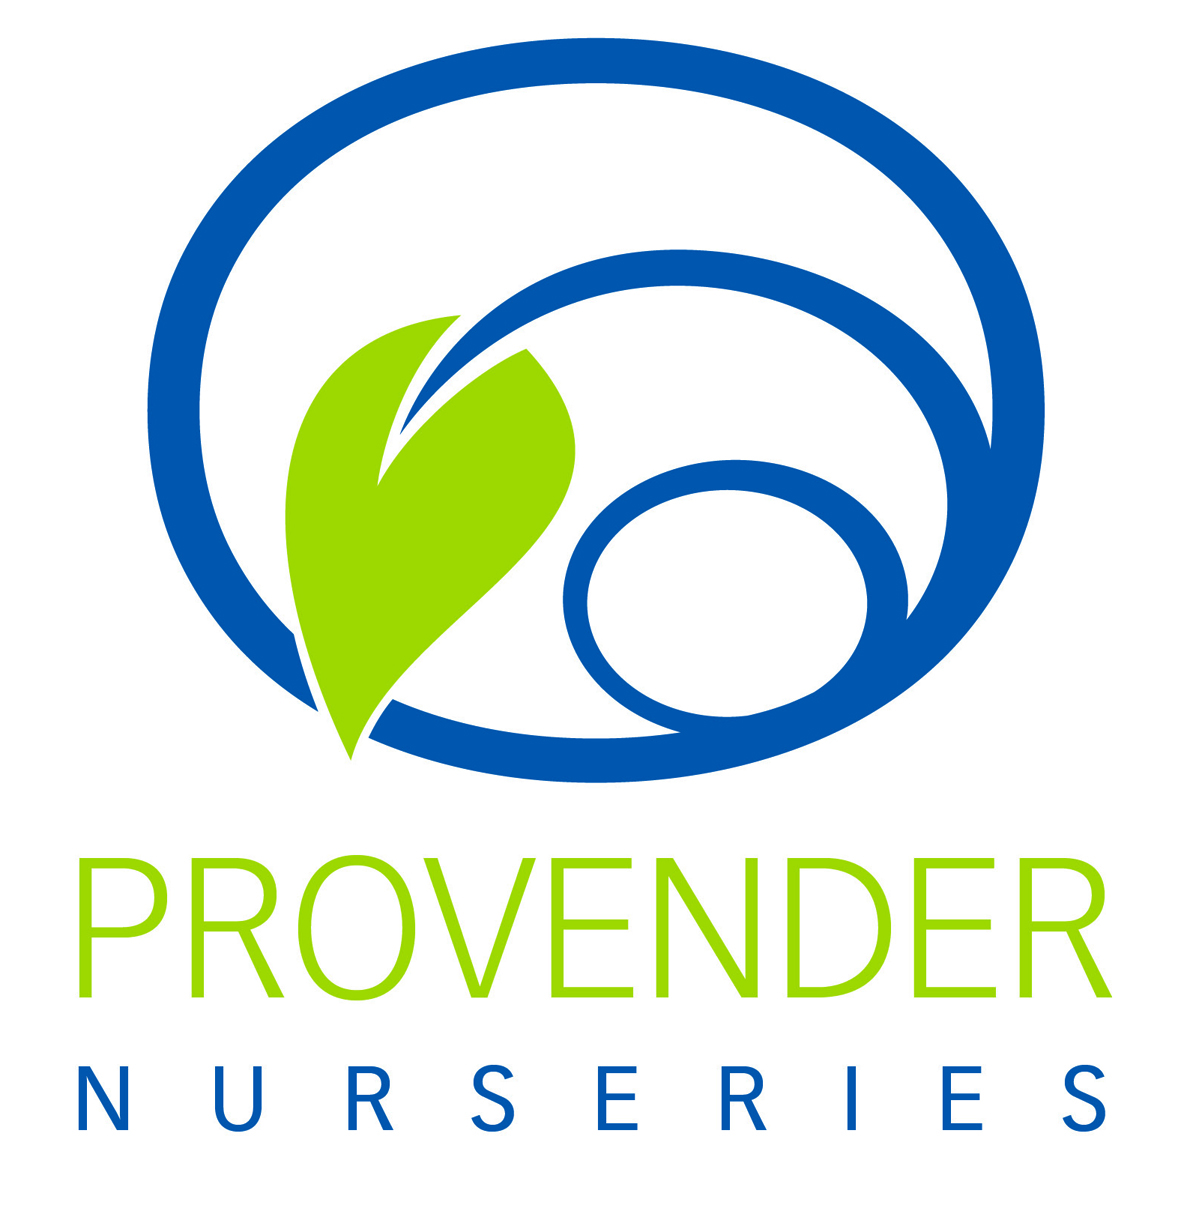 Provender Nurseries